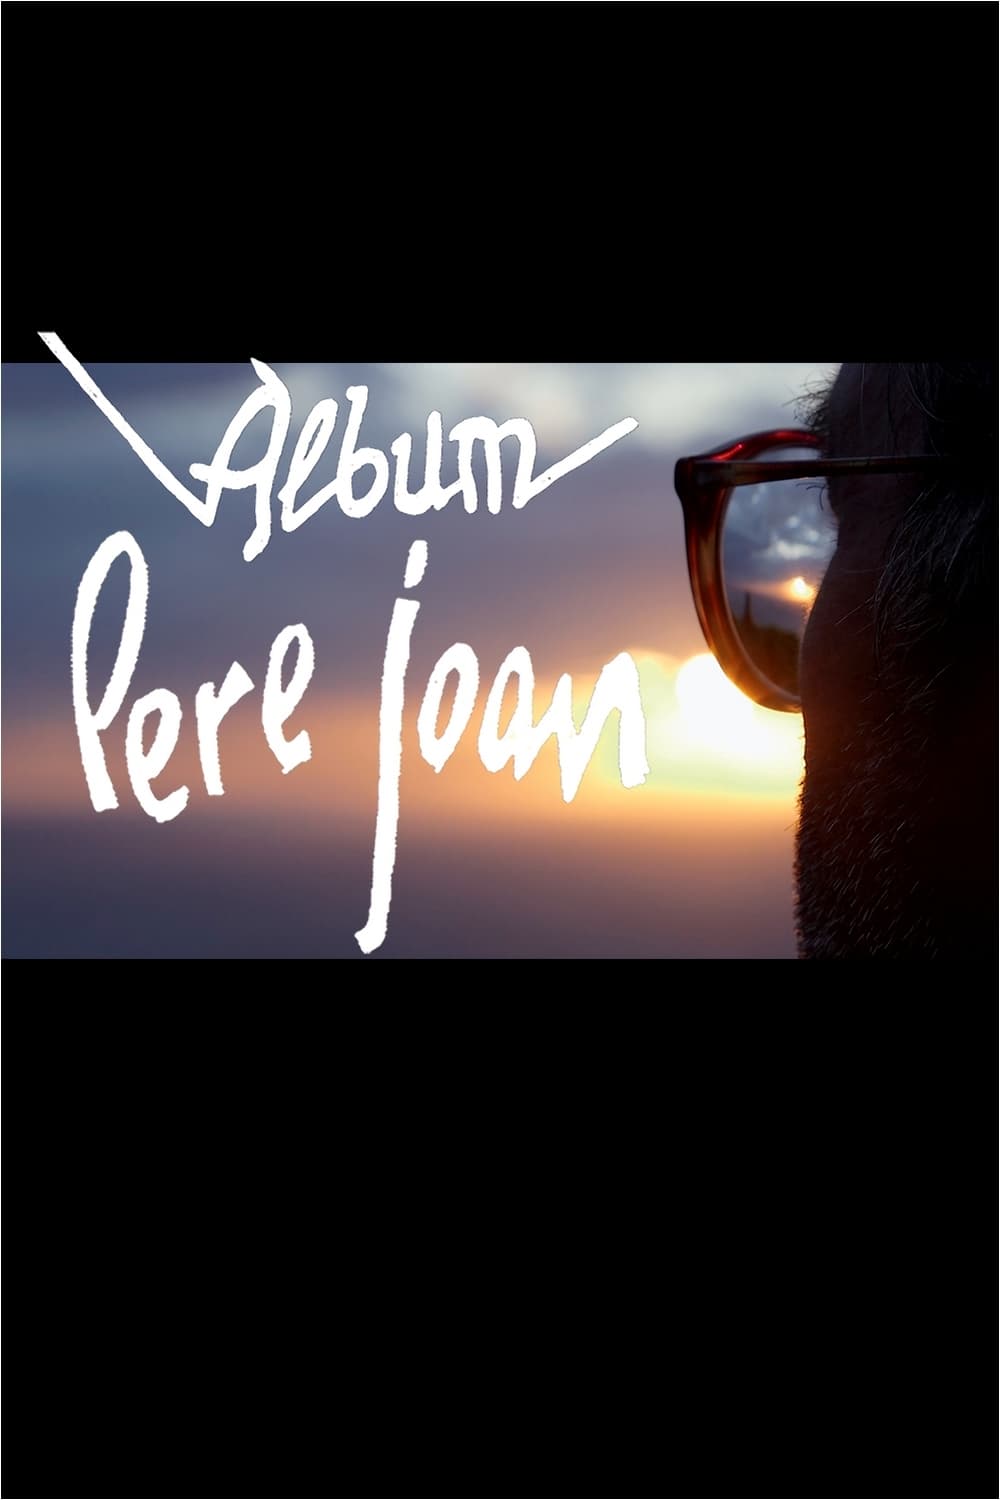 Àlbum Pere Joan